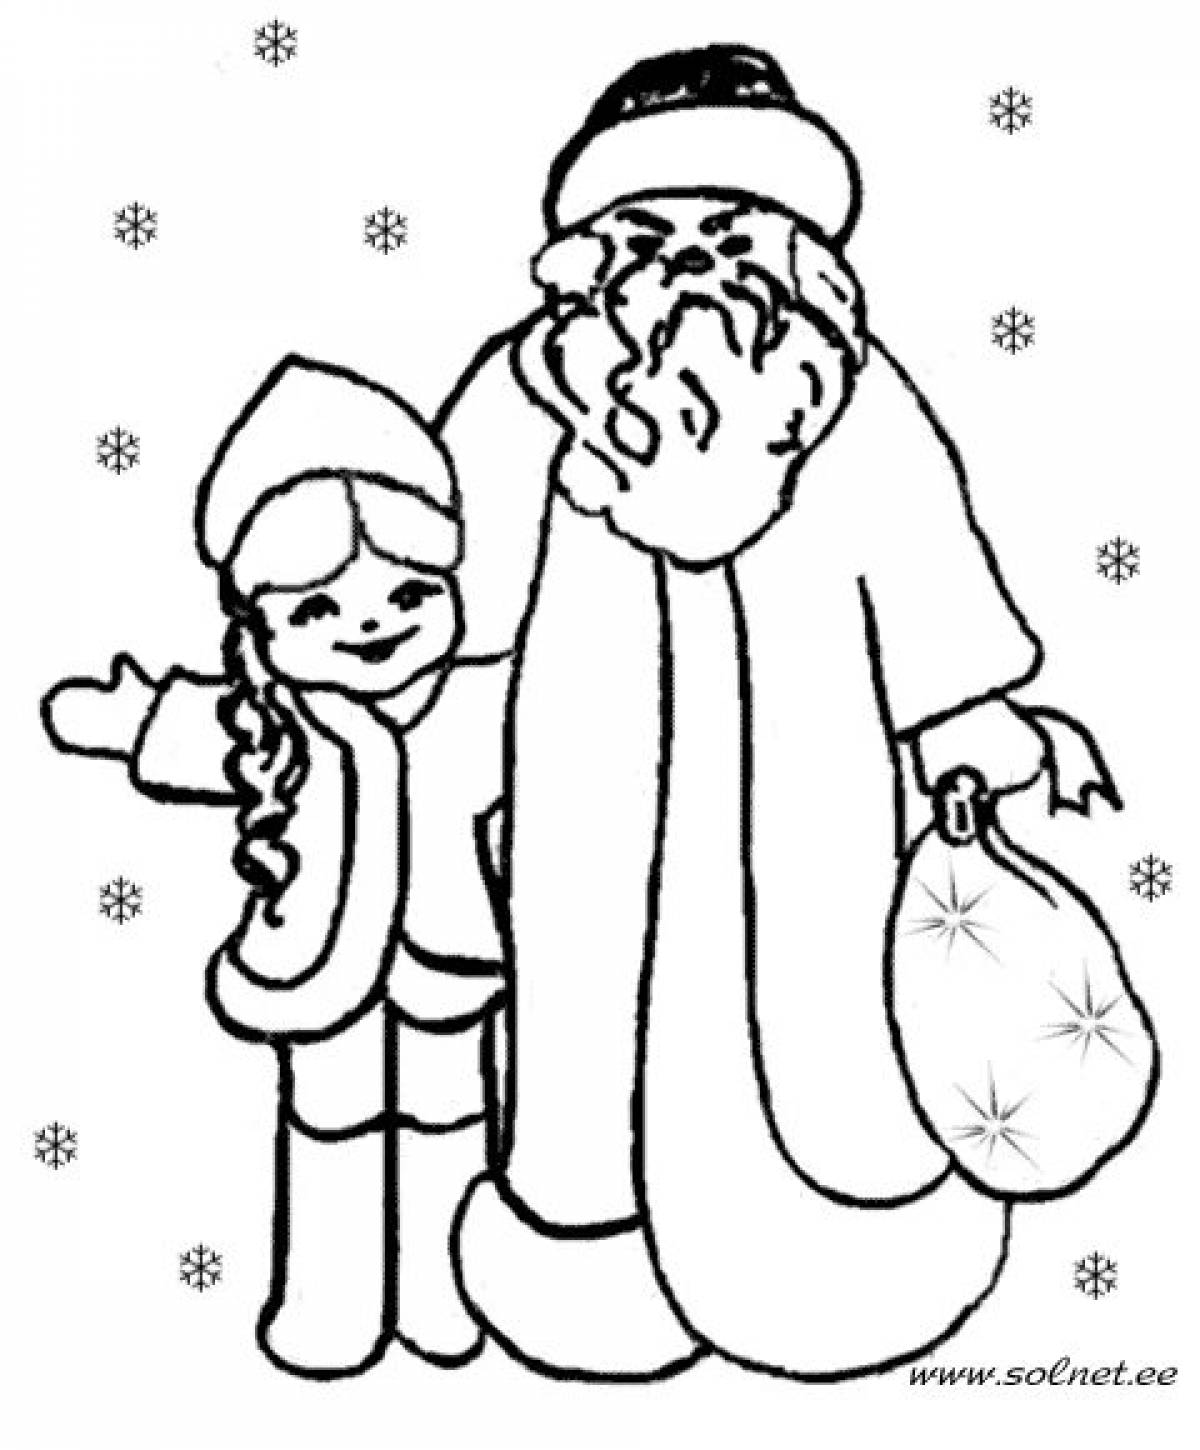 Радостный рисунок деда мороза и снегурочки